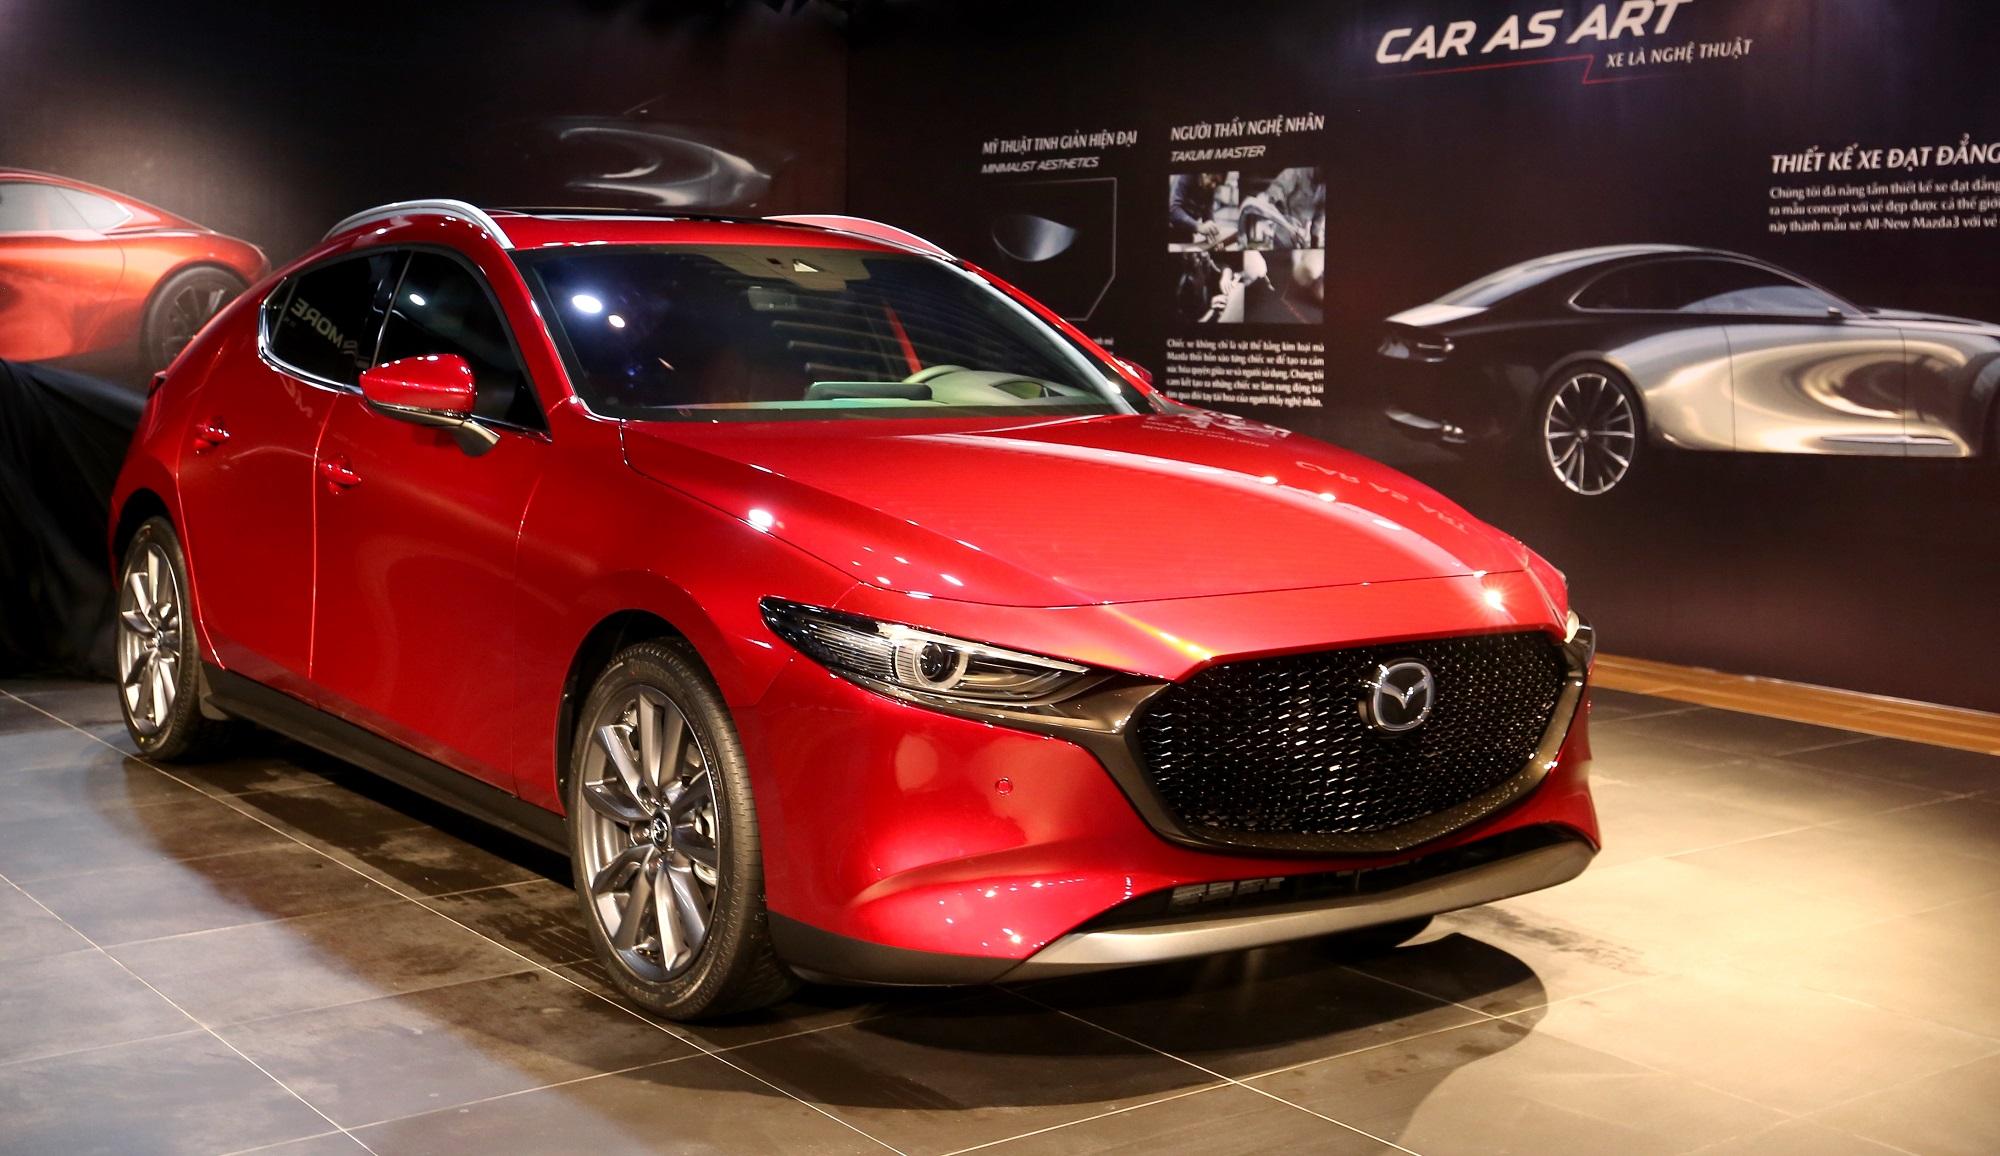 Lỗi phanh khẩn cấp trên Mazda3 mới về Việt Nam: Chỉ xuất hiện cục bộ